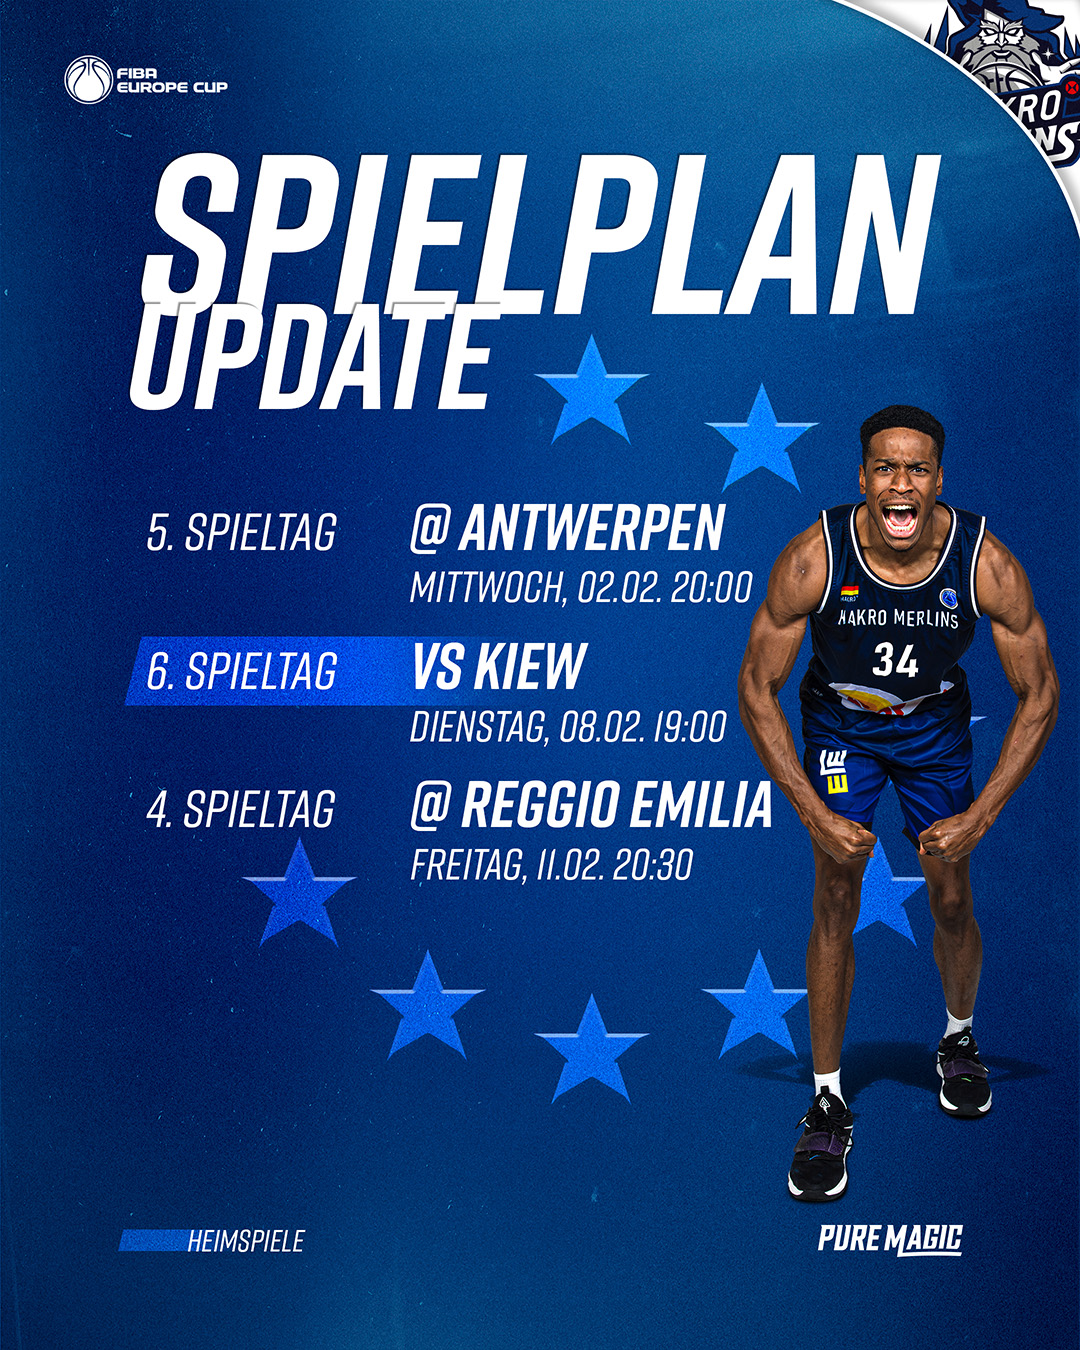 Spielplan-Update-Europe Cup Homepage.jpg